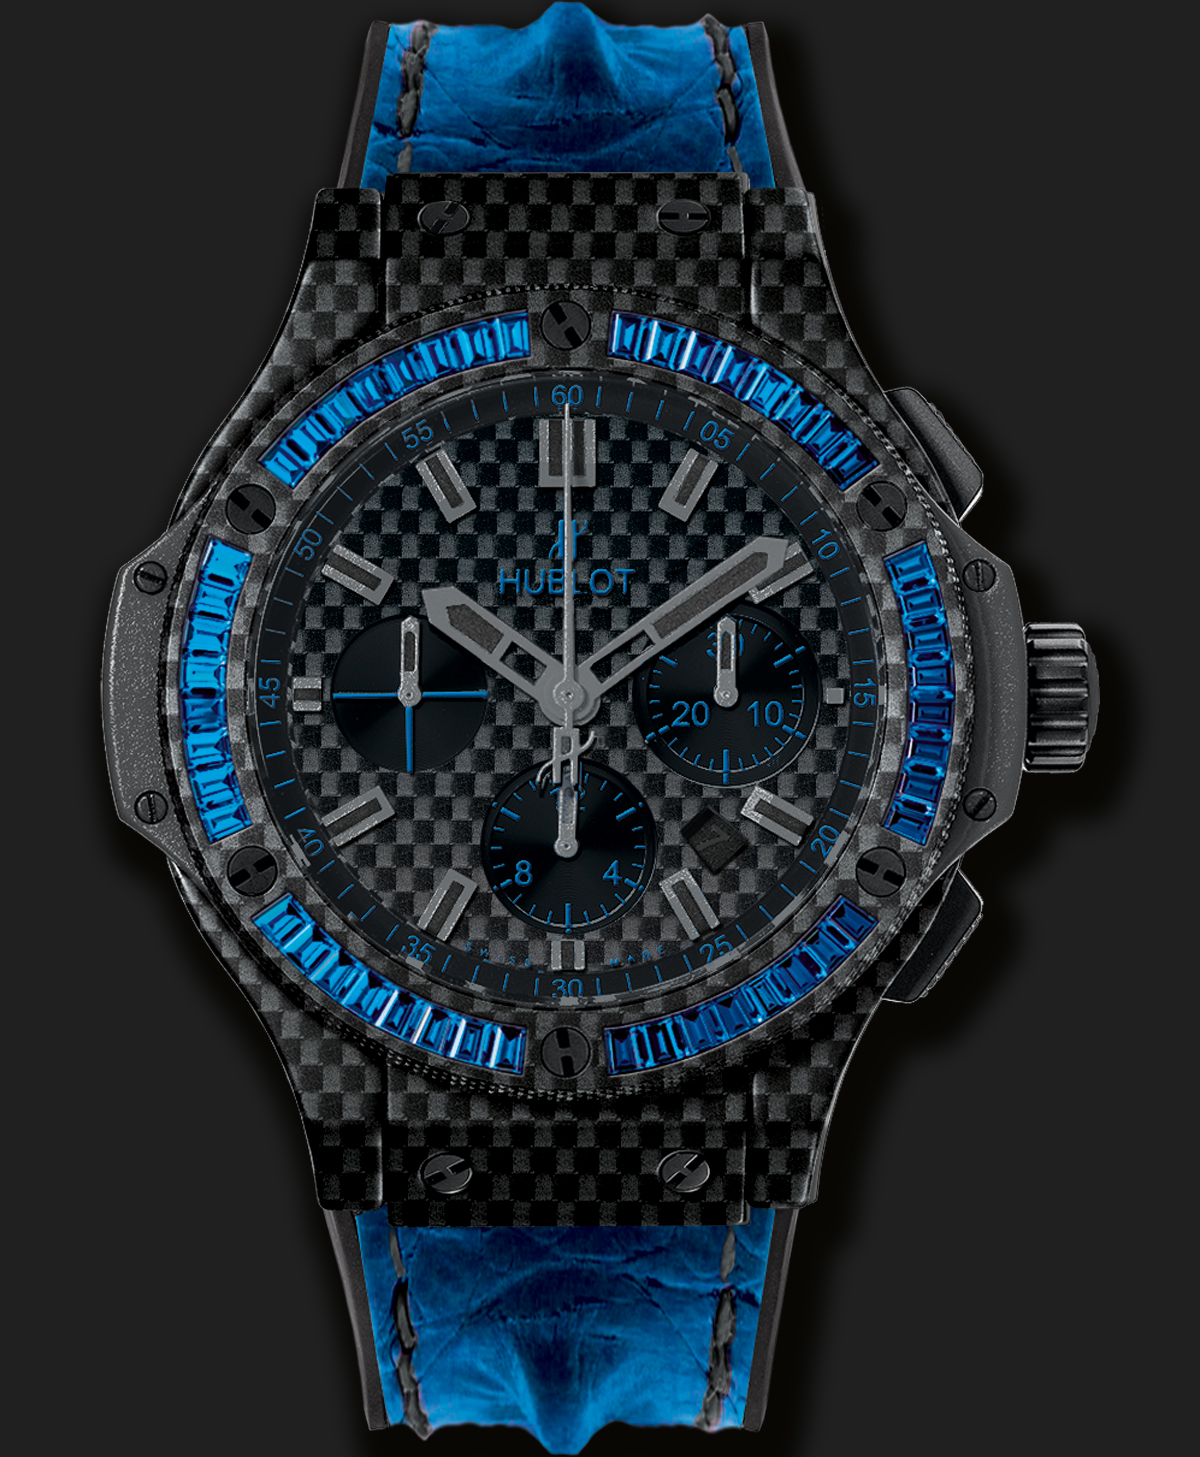 Hublot Big Bang Carbon Bezel Baguette Blue Sapphires là mẫu đồng hồ thể thao màu xanh ngọc bích này được trang bị vòng bezels sợi carbon và dây đeo được làm từ cao su tự nhiên sẽ là lựa chọn tốt nhất cho những cô nàng cá tính, mạnh mẽ và yêu thích thể thao. Ngoài ra, đồng hồ cũng được trang bị cơ chế Chronograph với vòng xem thời gian dial phụ ở vị trí 6h. Mặt trước và mặt sau của chiếc đồng hồ được trang bị mặt kính Sapphire trong suốt, chống lóa.